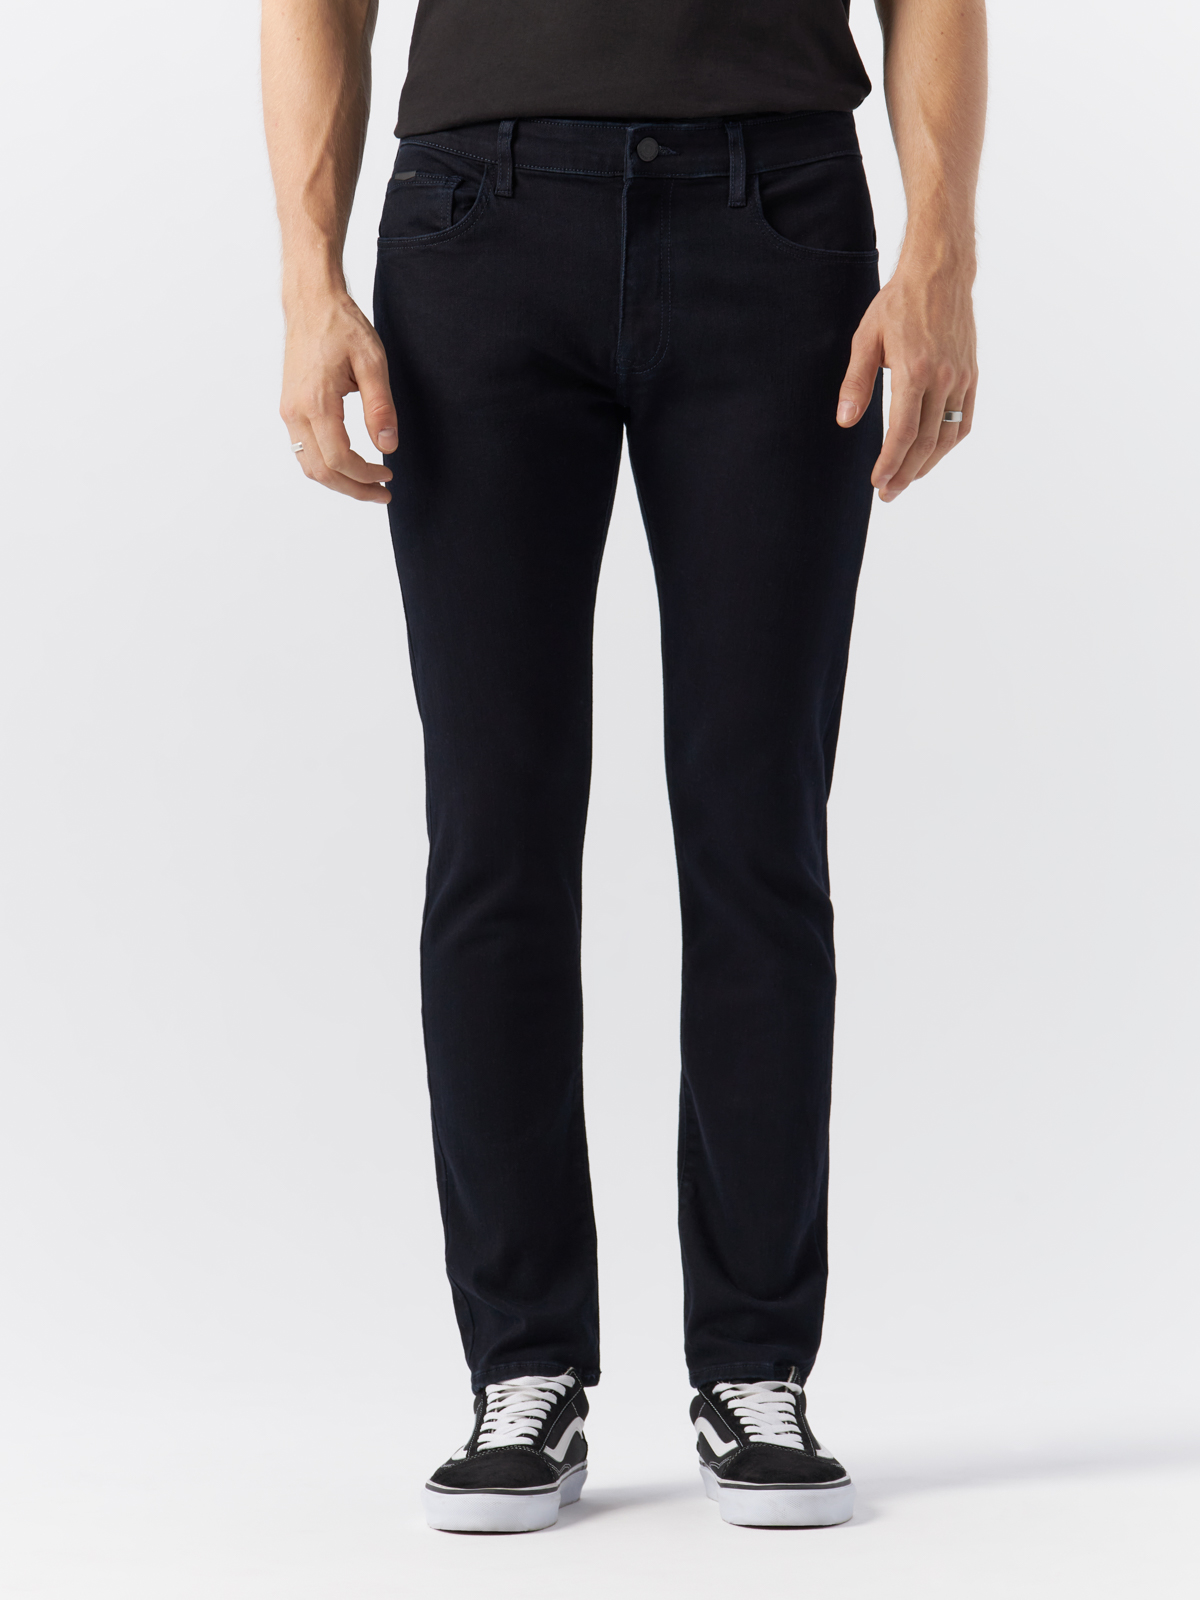 Джинсы Cross Jeans для мужчин, E 185-169, размер 28-30, чёрные